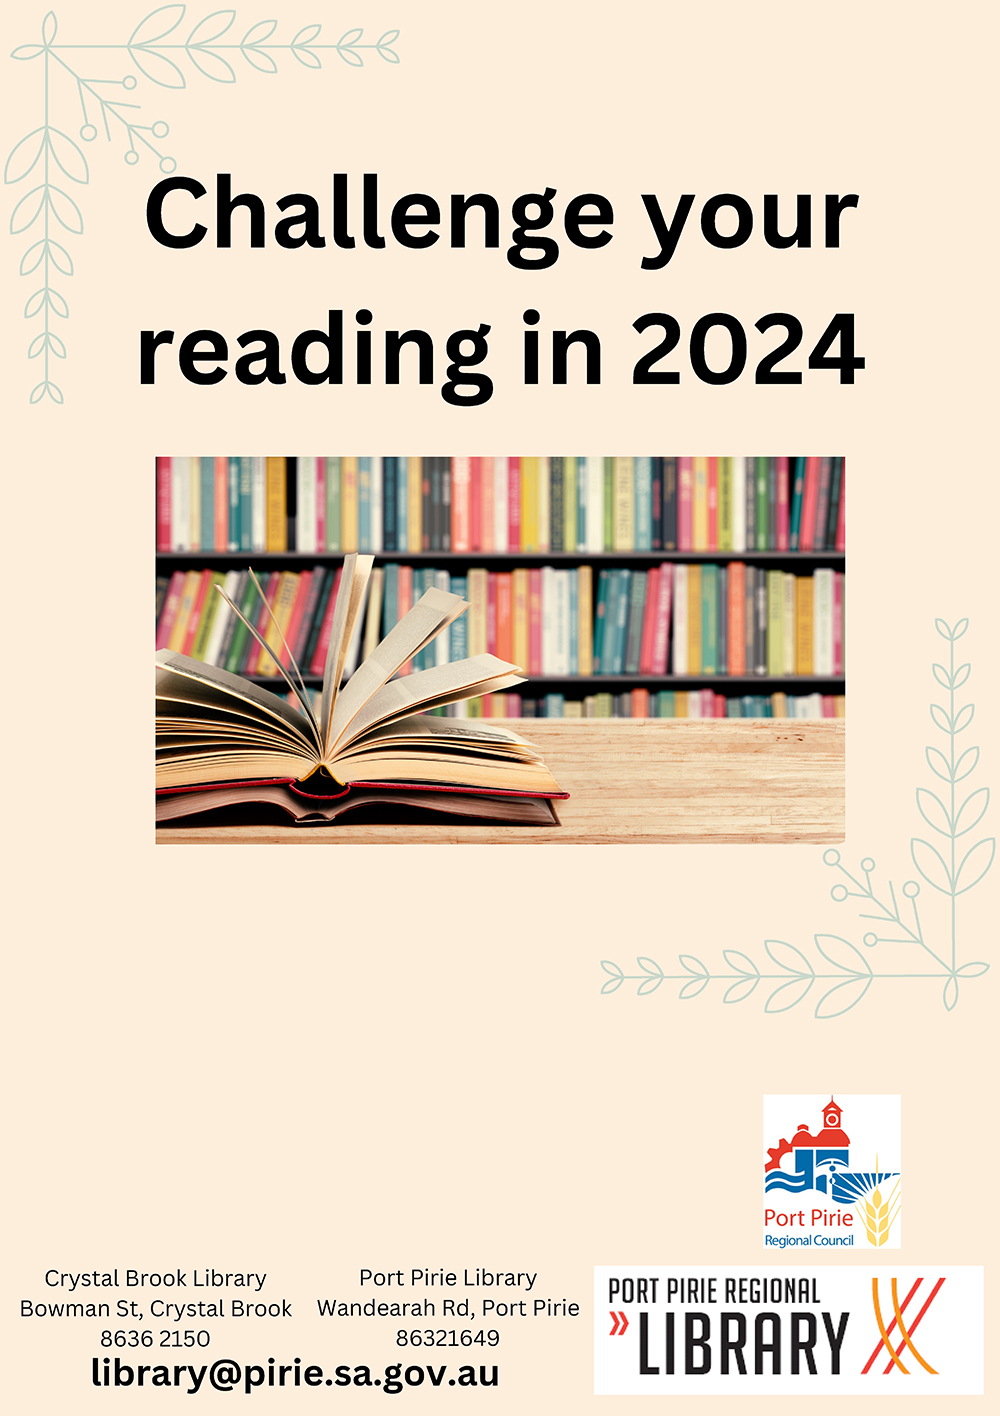 2024 Reading Challenge